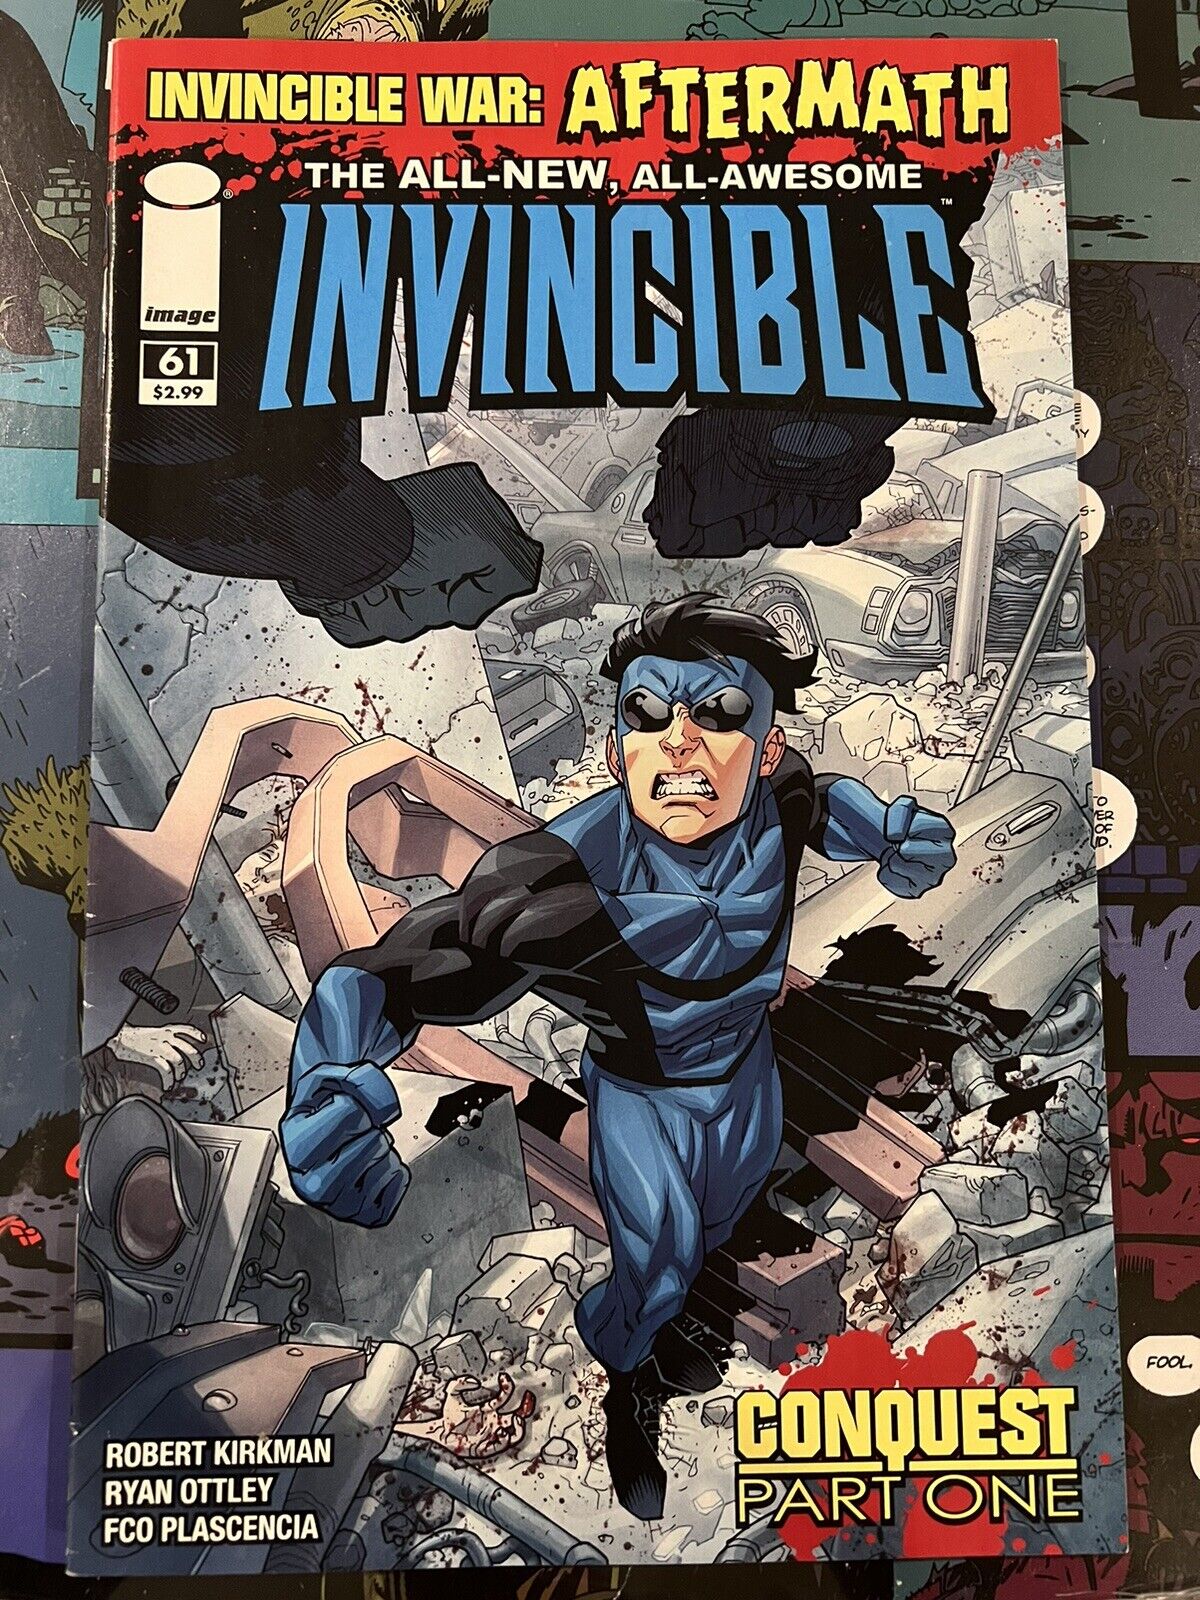 Invincible #61